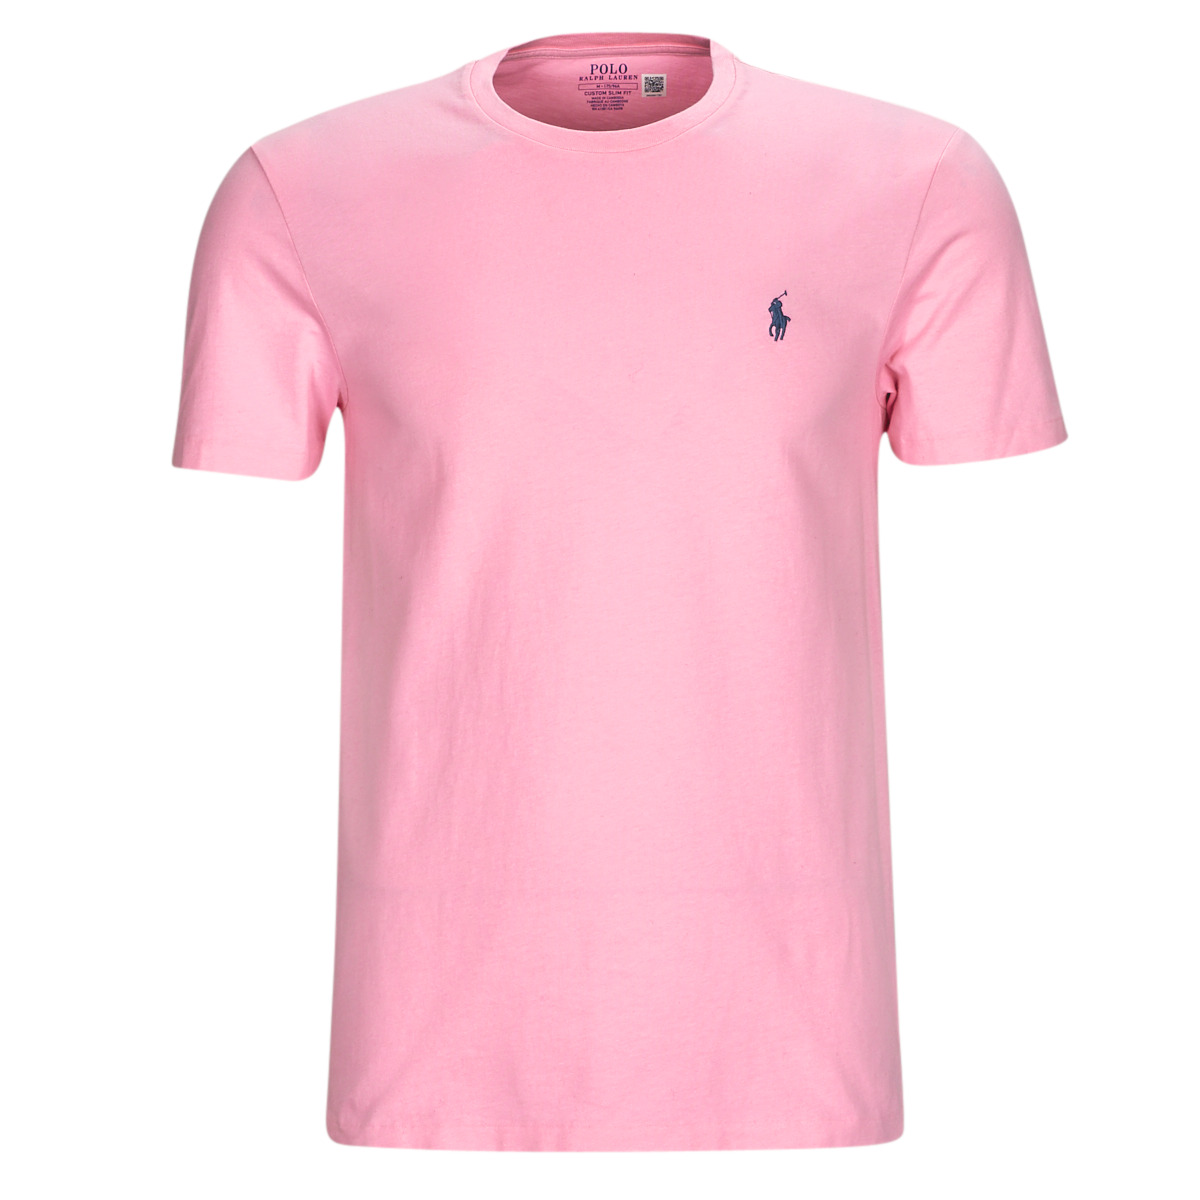 Vêtements Homme Polo Sport embroidered logo T-shirt T-SHIRT AJUSTE EN COTON Rose